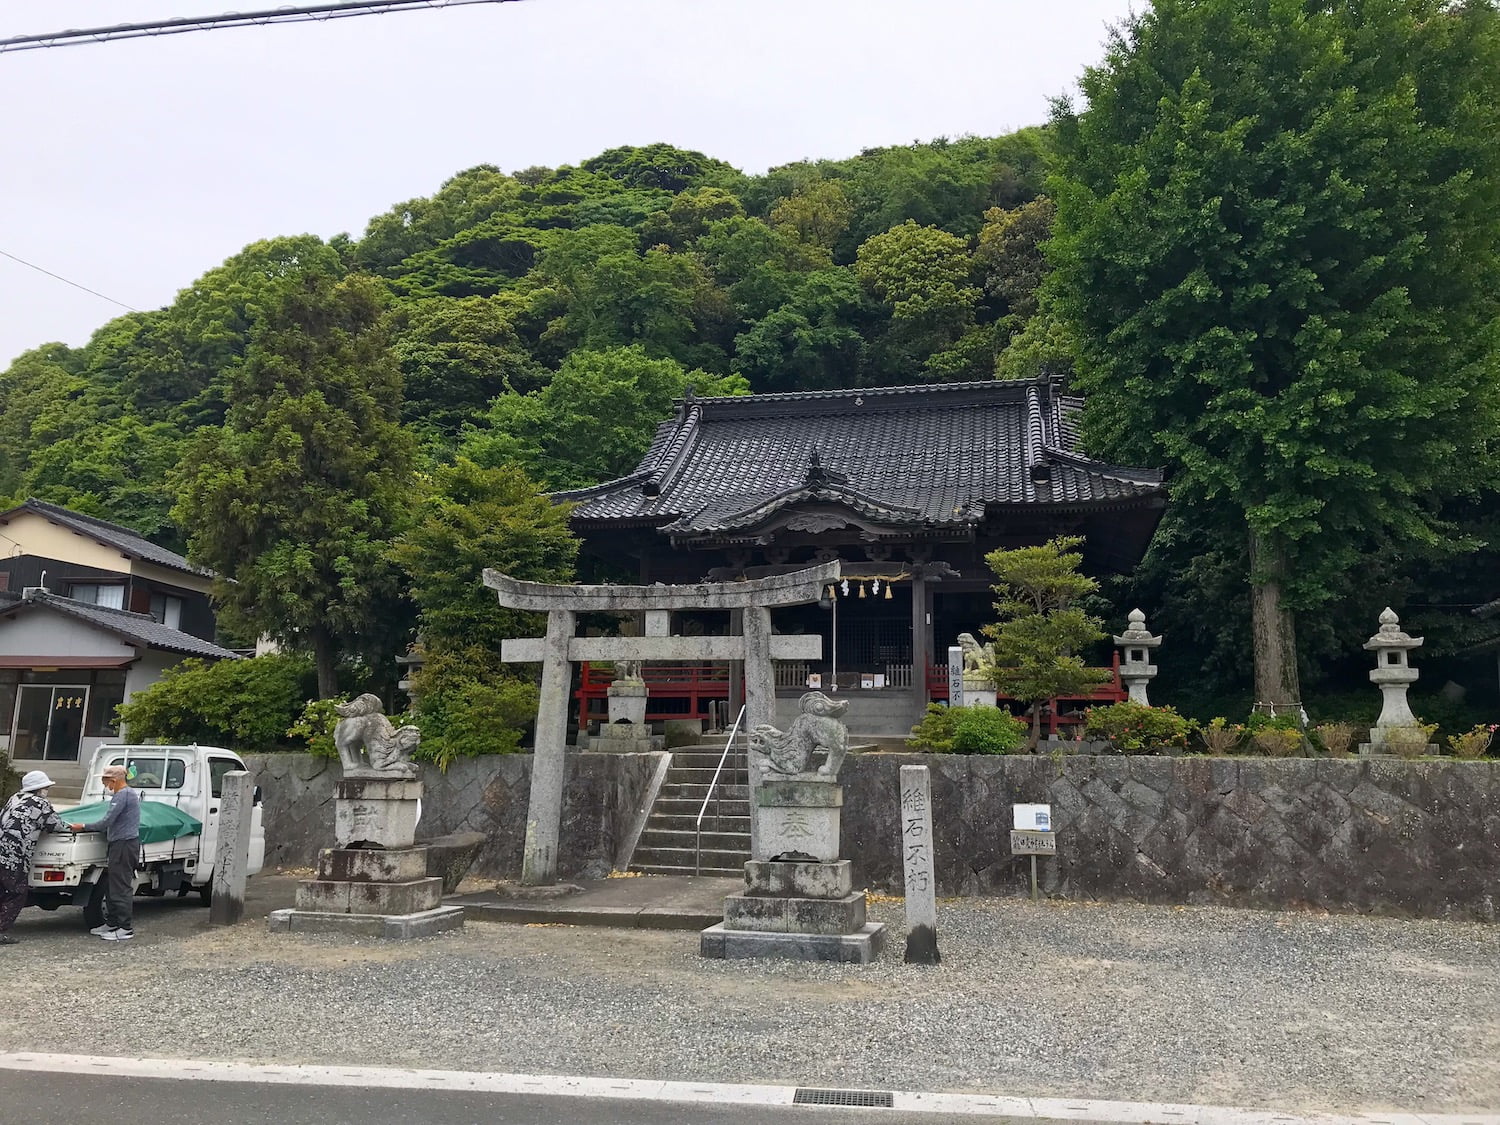 Tatsuhime jinja Shrine